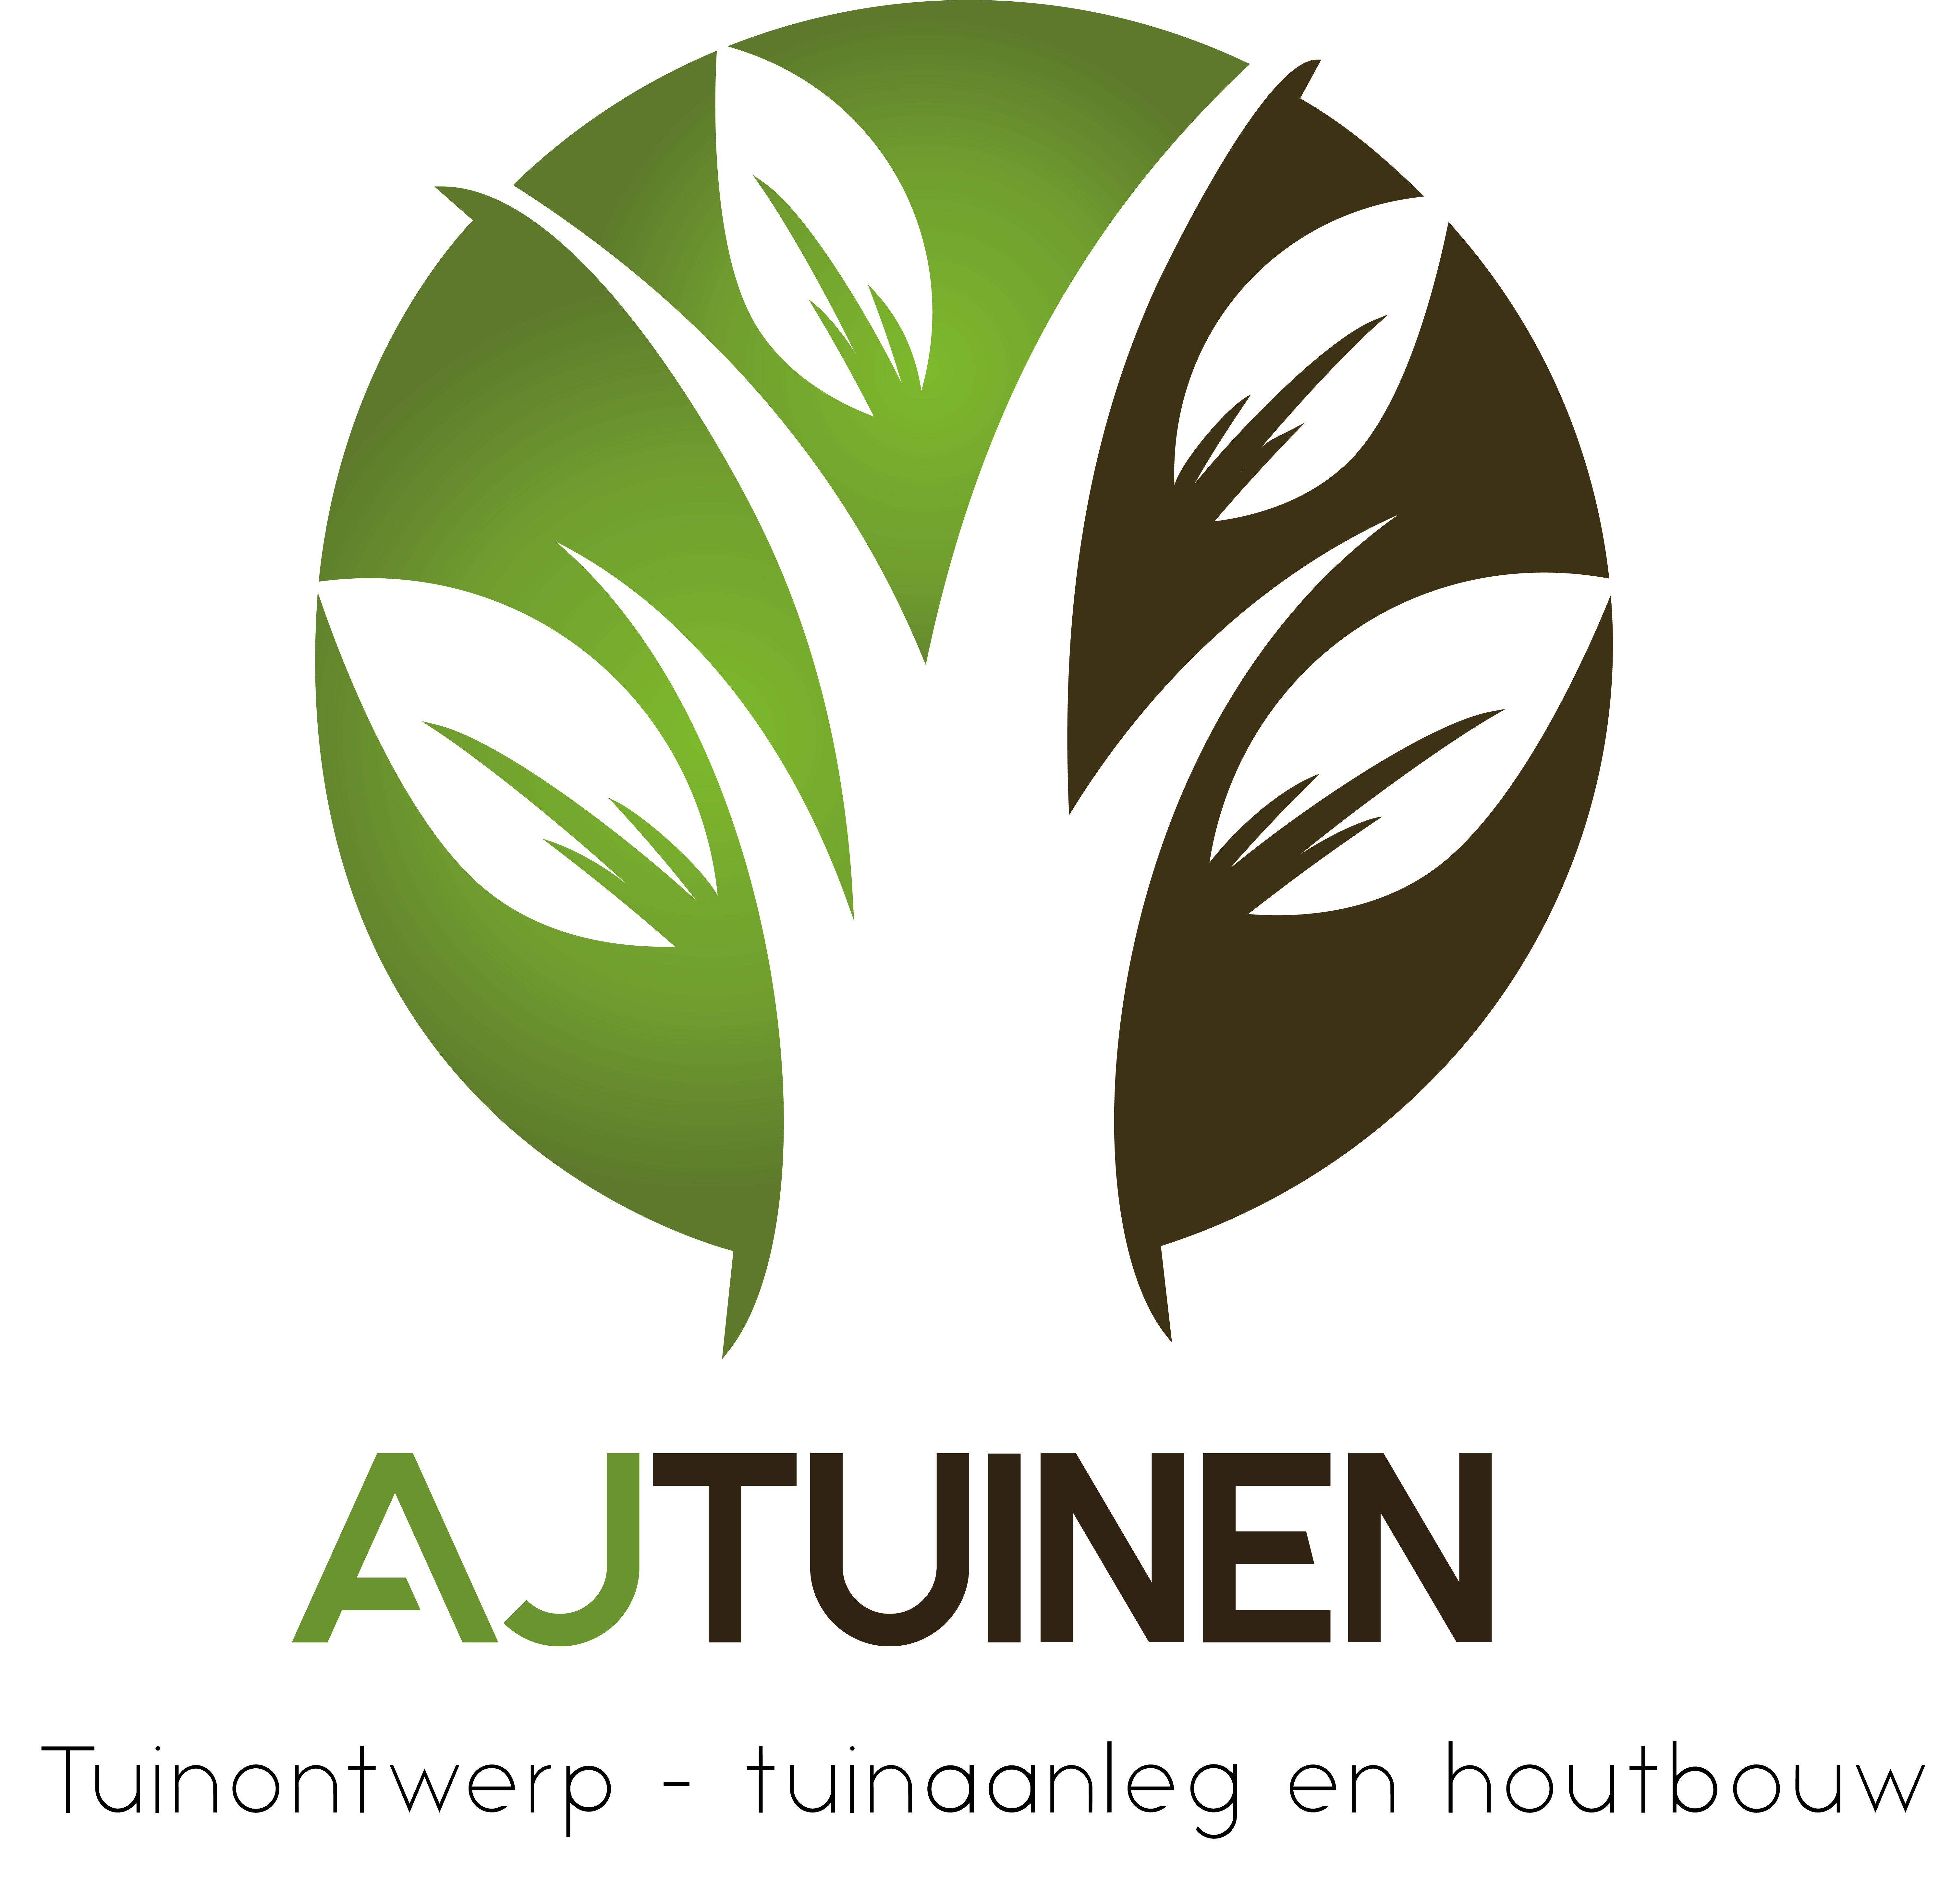 AJ tuinen logo2